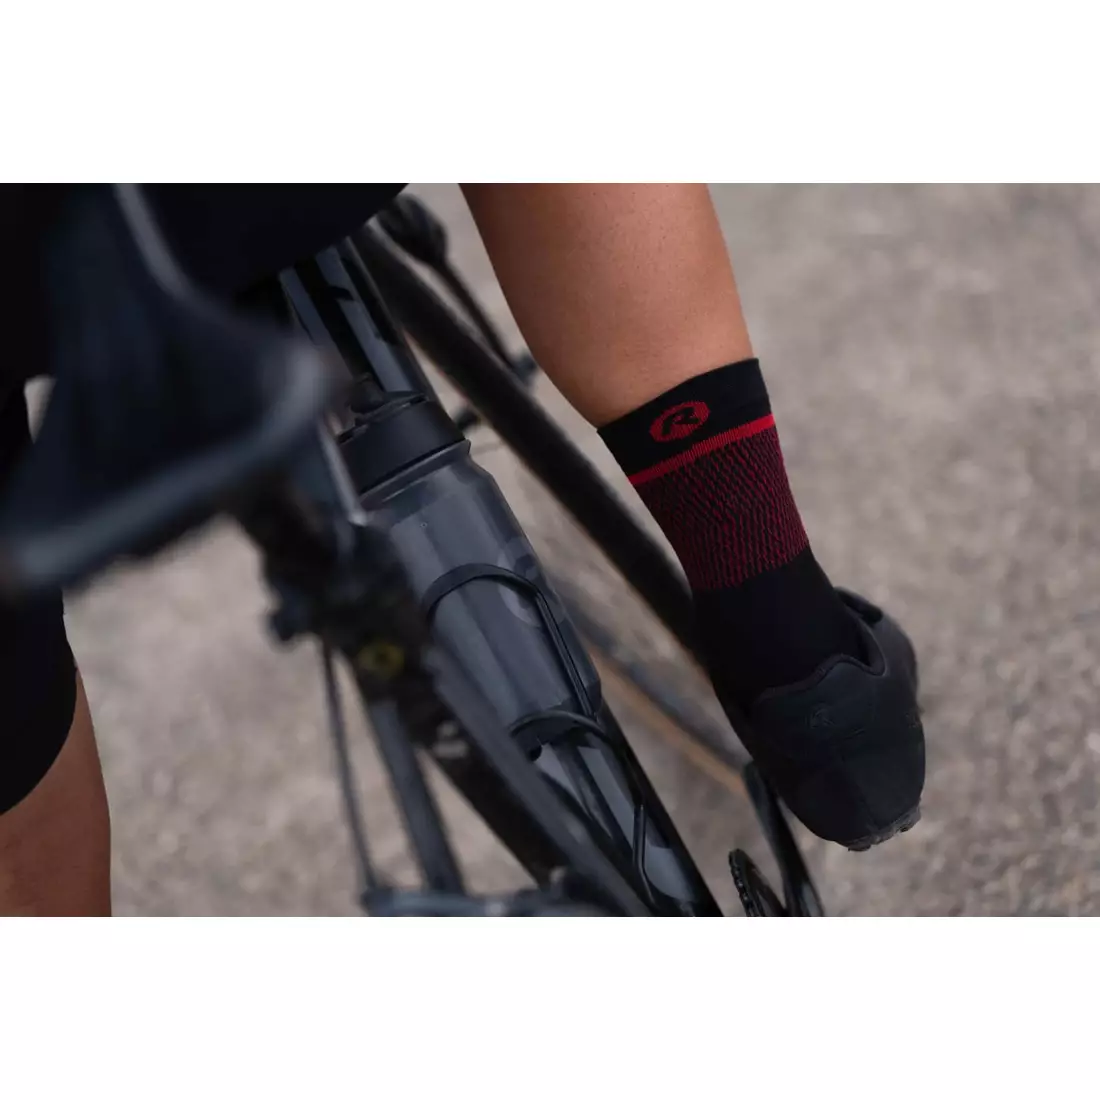 Rogelli HERO II cyklistické/športové ponožky, čierna a červená